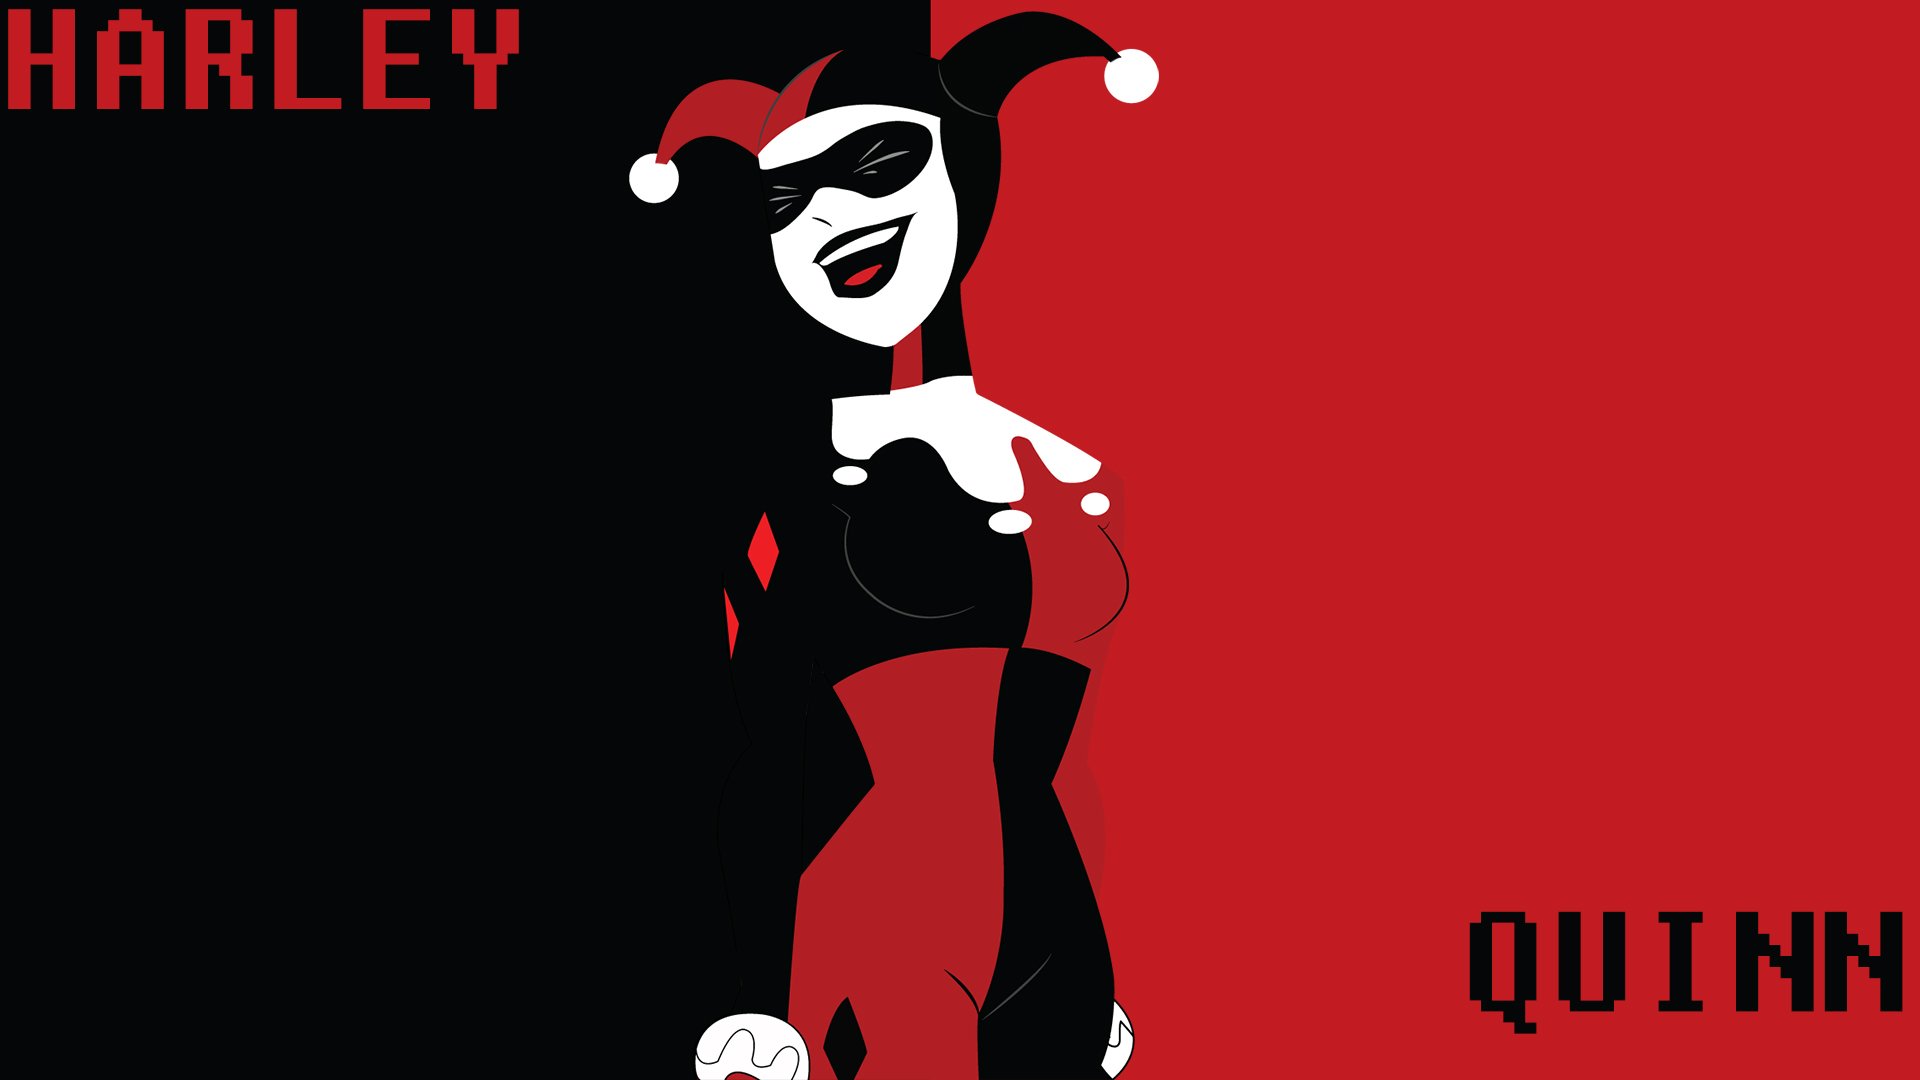 Harley Quinn Cartoon/Comic Full HD Fondo de Pantalla and Fondo de